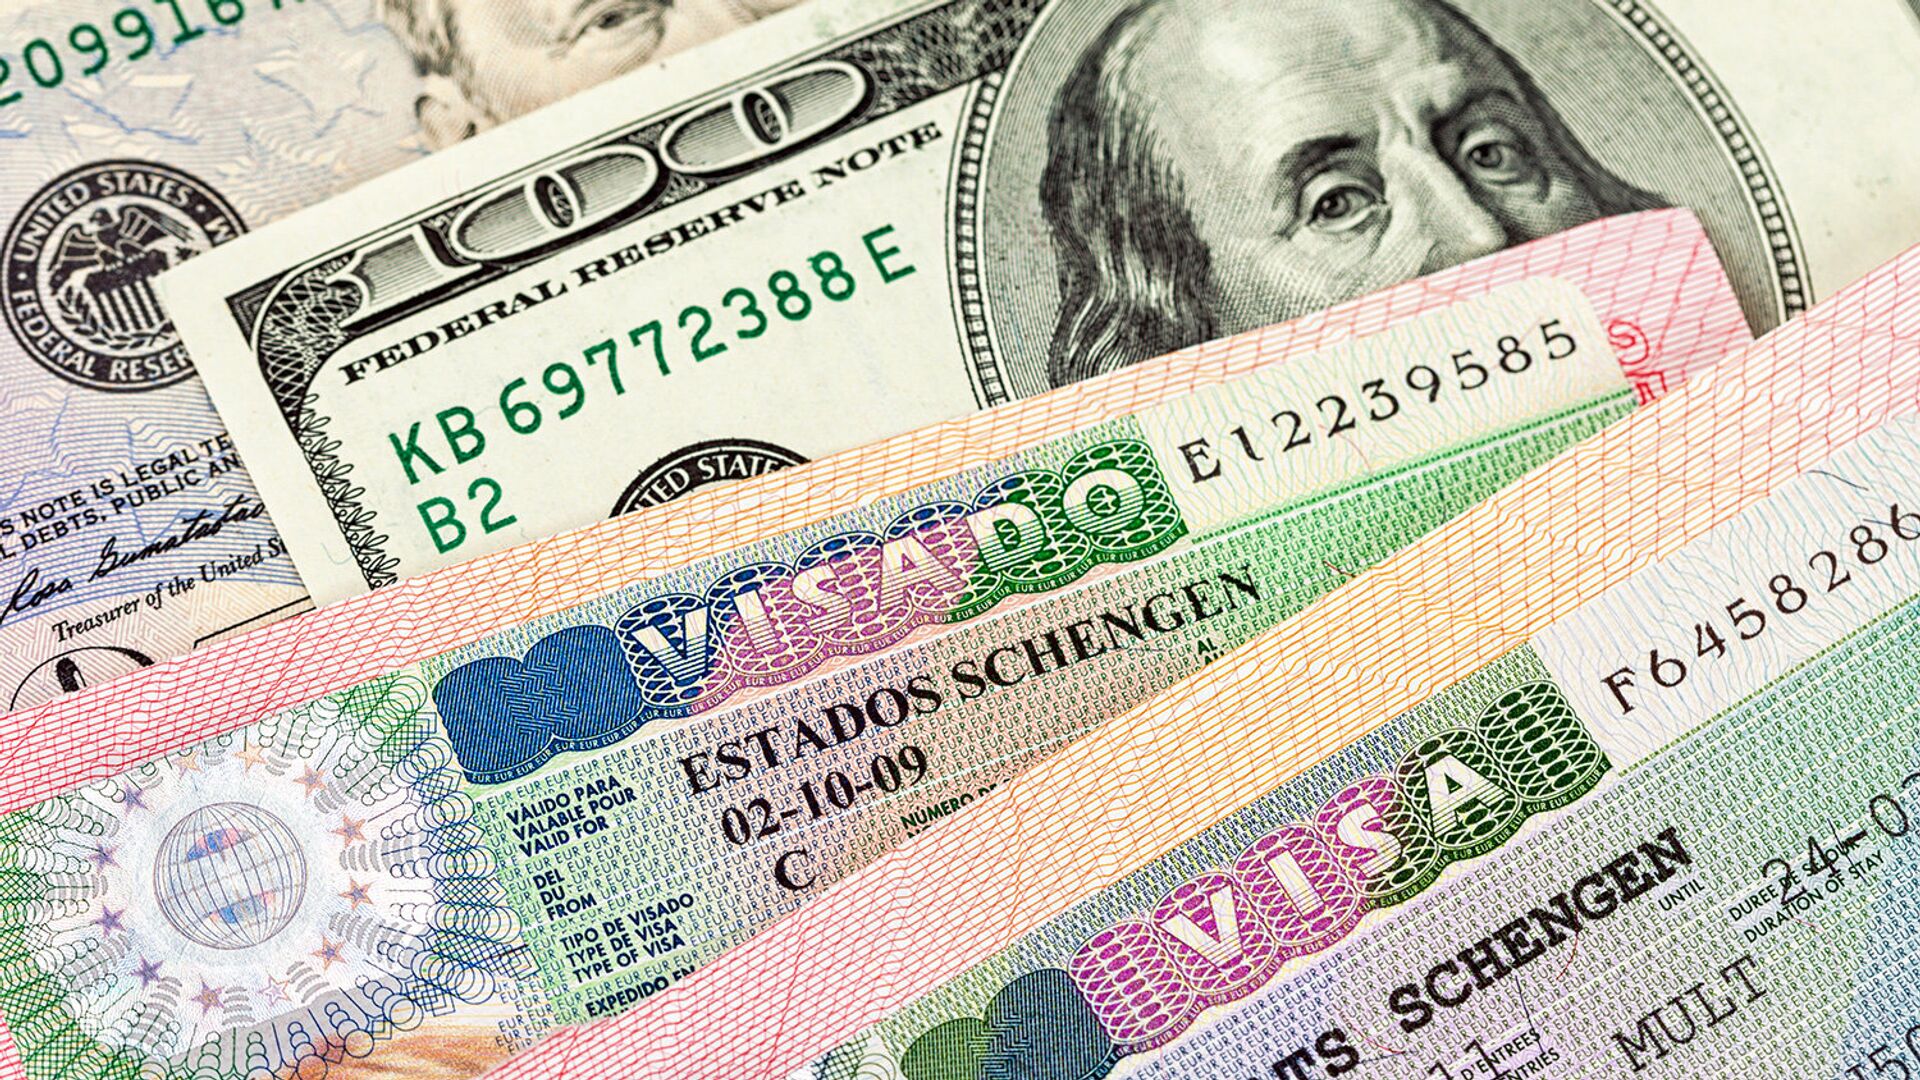 Шенгенская виза дорожает до 90 евро для взрослых